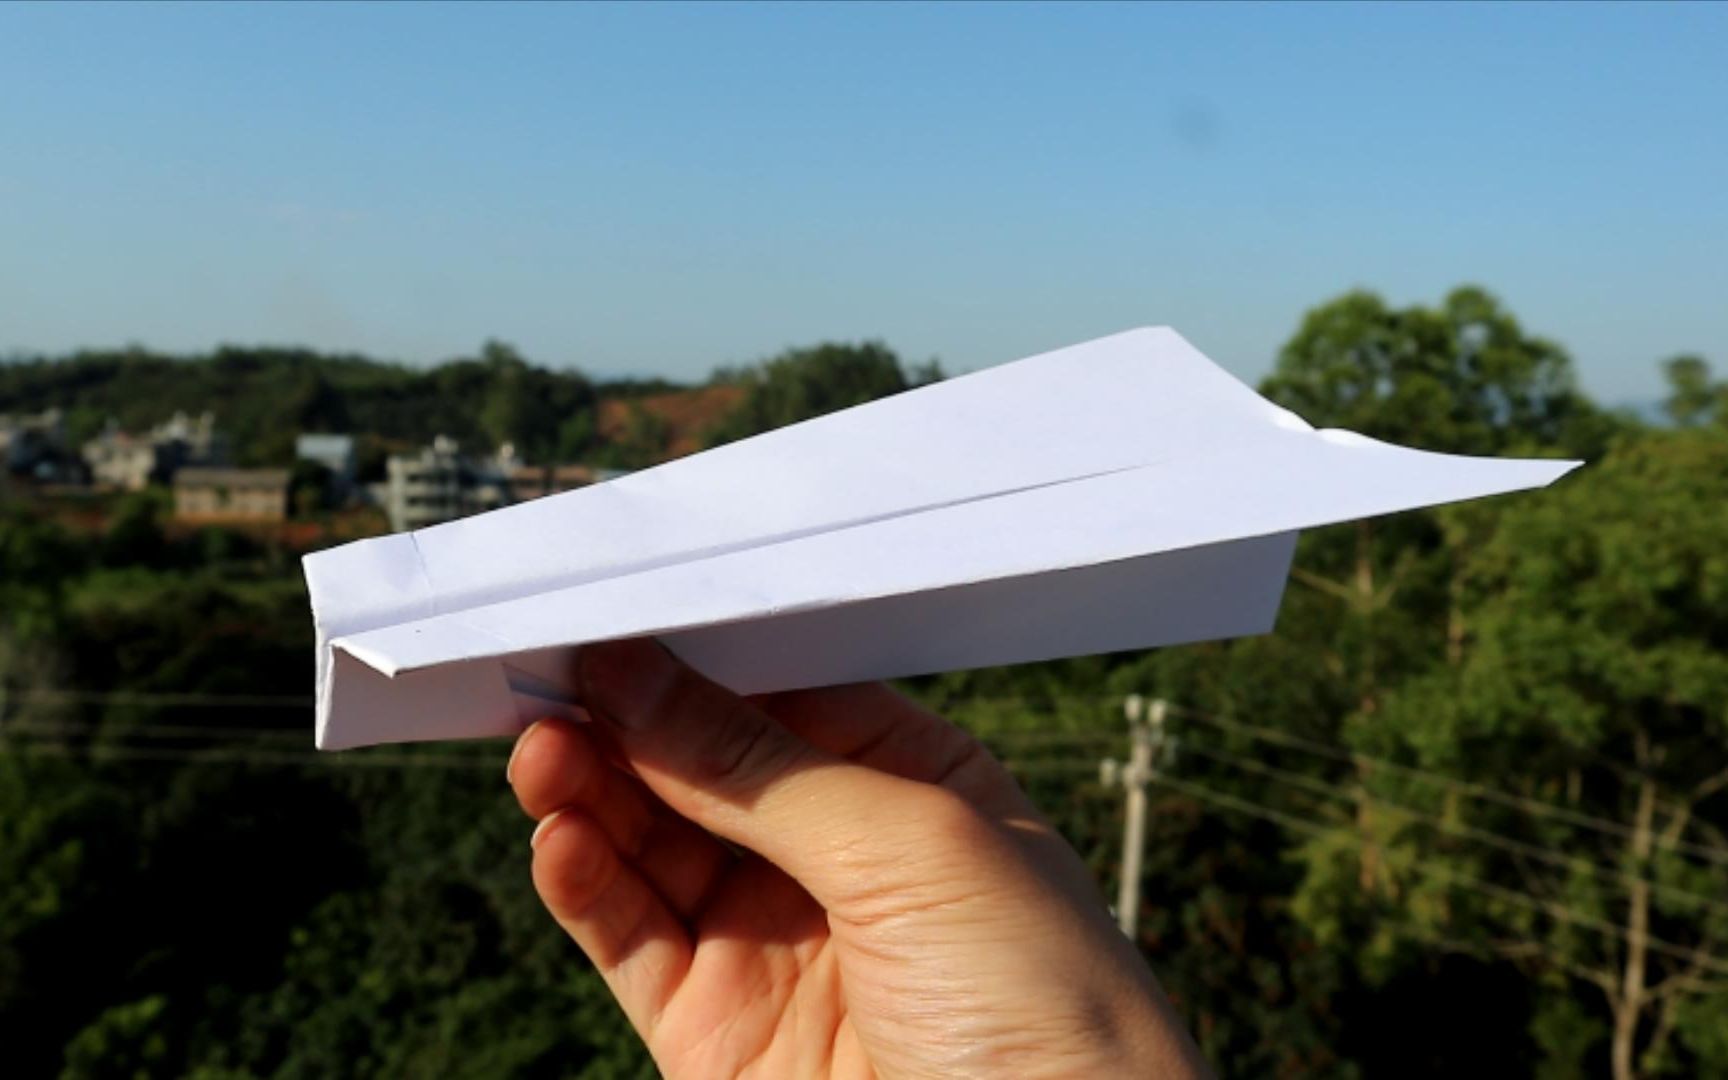 【原创纸飞机】长距离滑翔机——速跑者,就爱折飞得远的纸飞机